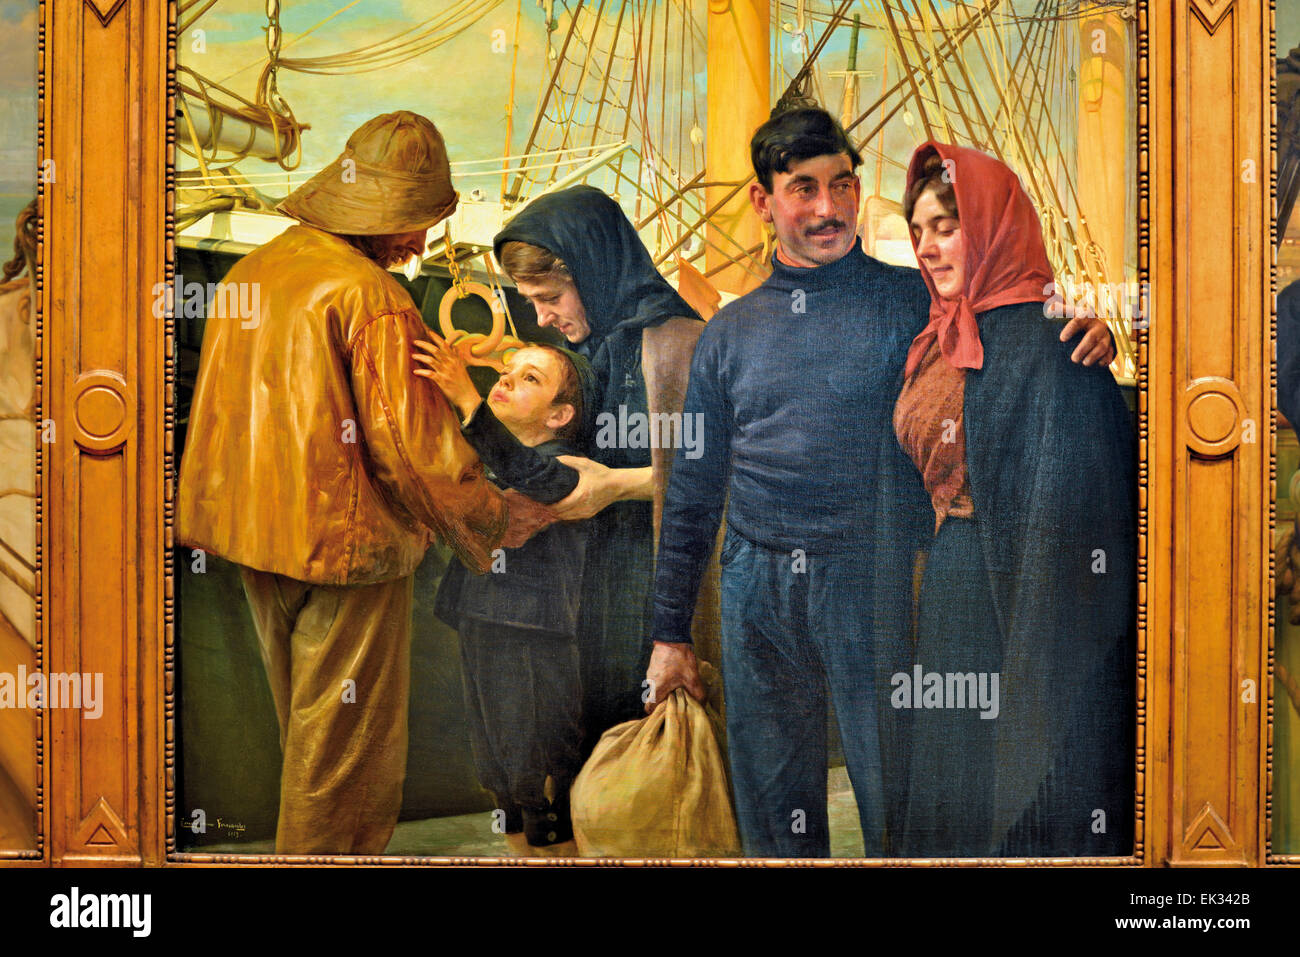 Portugal, Lisbonne : peinture historique 'O Marinheiro" avec les marins en disant au revoir aux familles dans le musée du Fado Banque D'Images